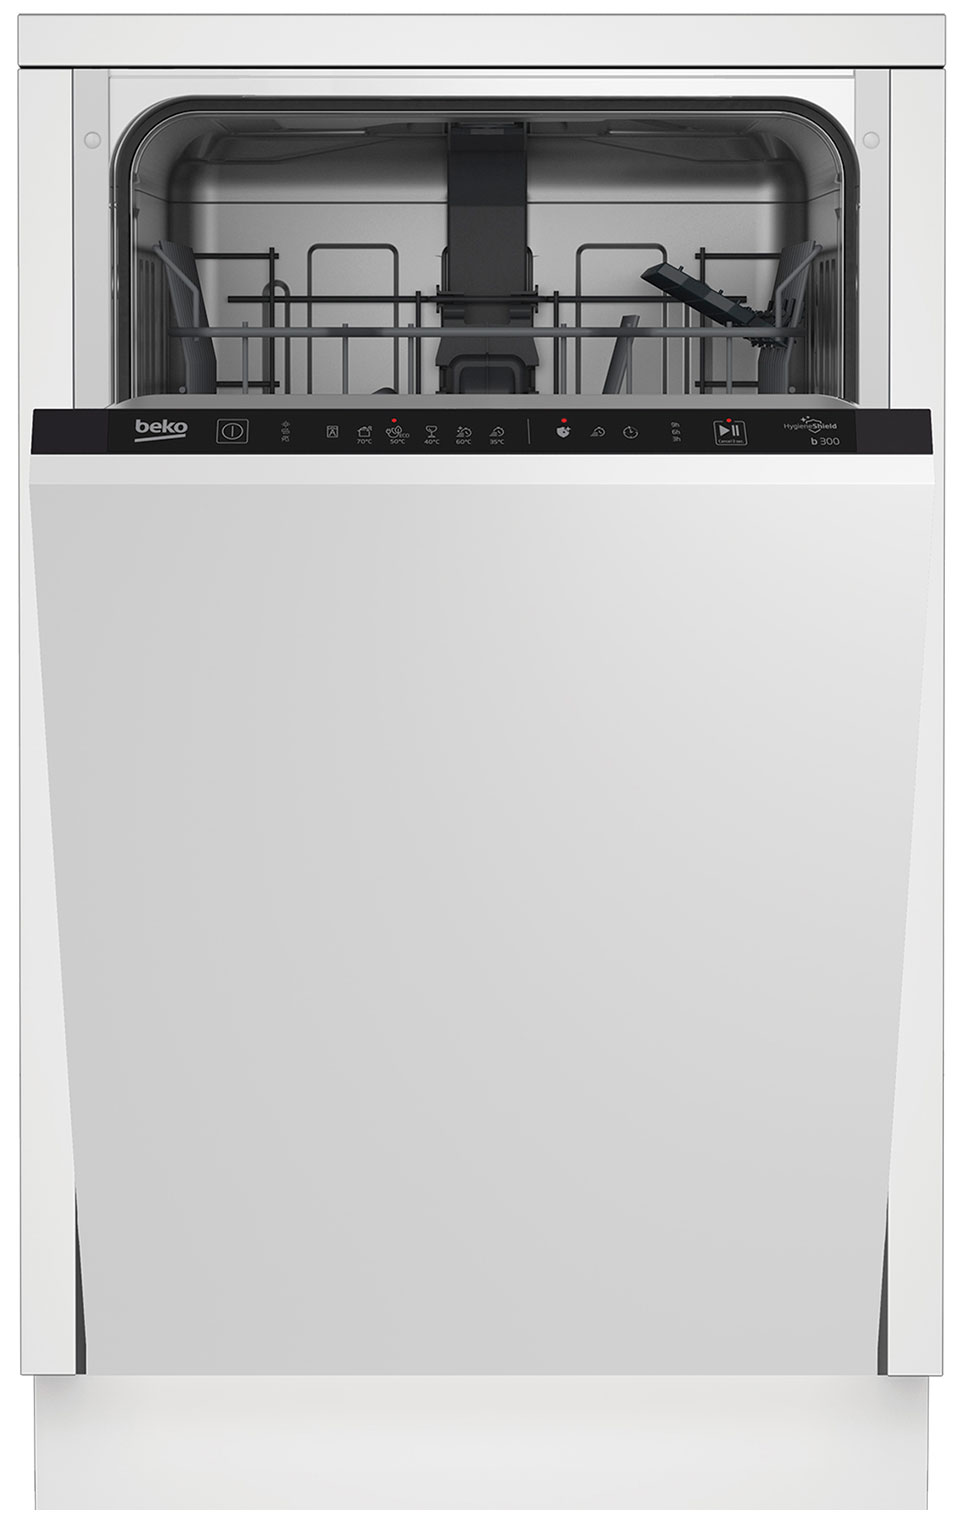 Встраиваемая посудомоечная машина Beko BDIS16020 встраиваемая посудомоечная машина beko bdin16520